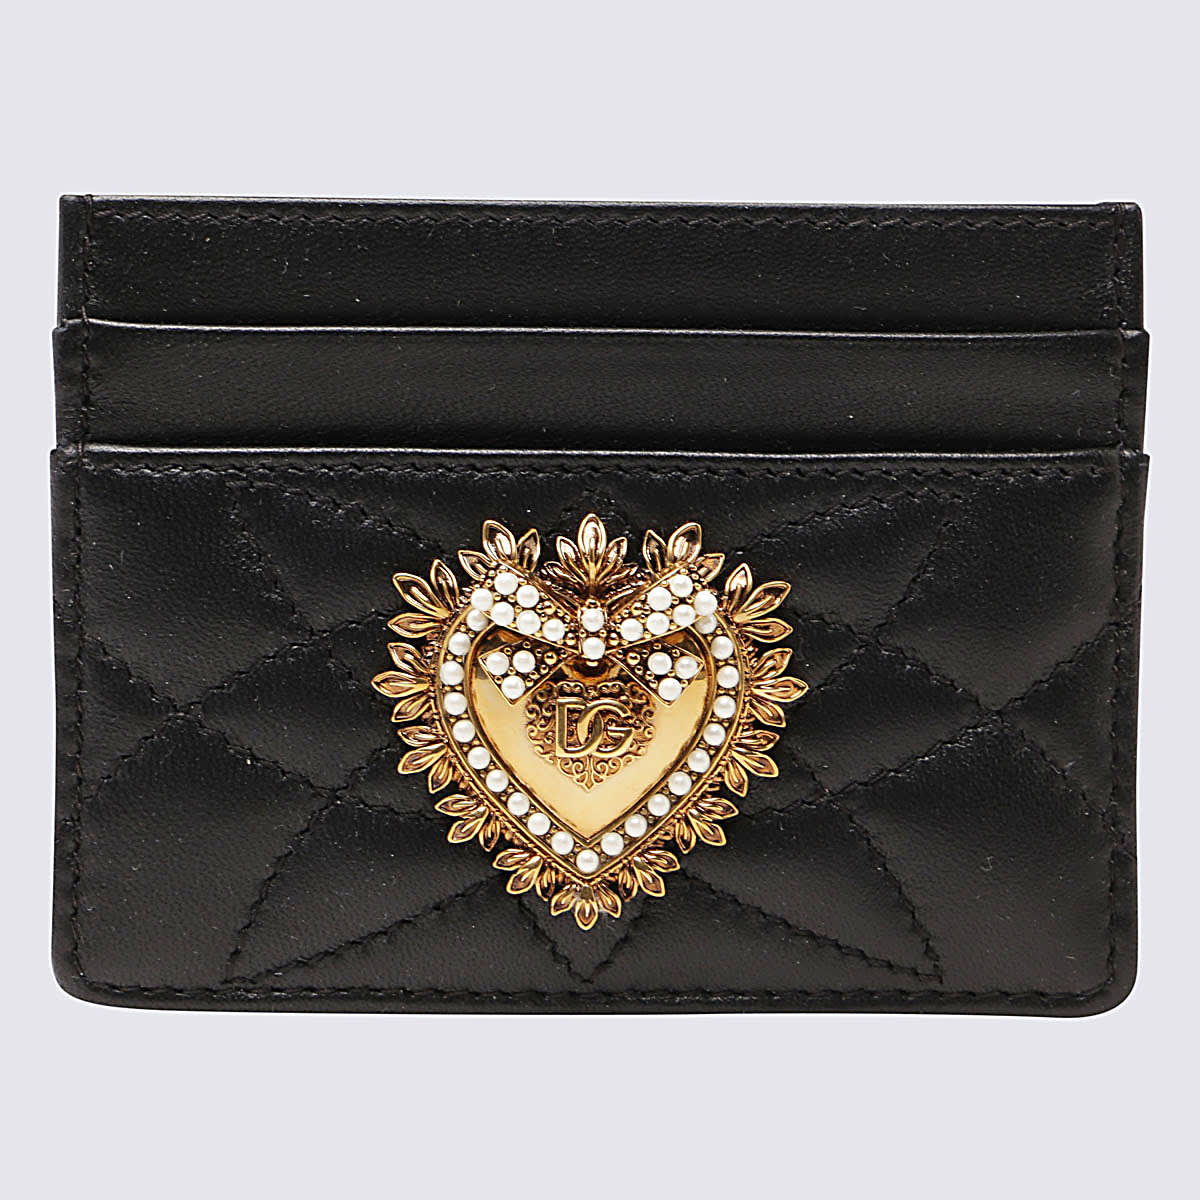 Dolce & Gabbana Black Leather Devotion Cardholder